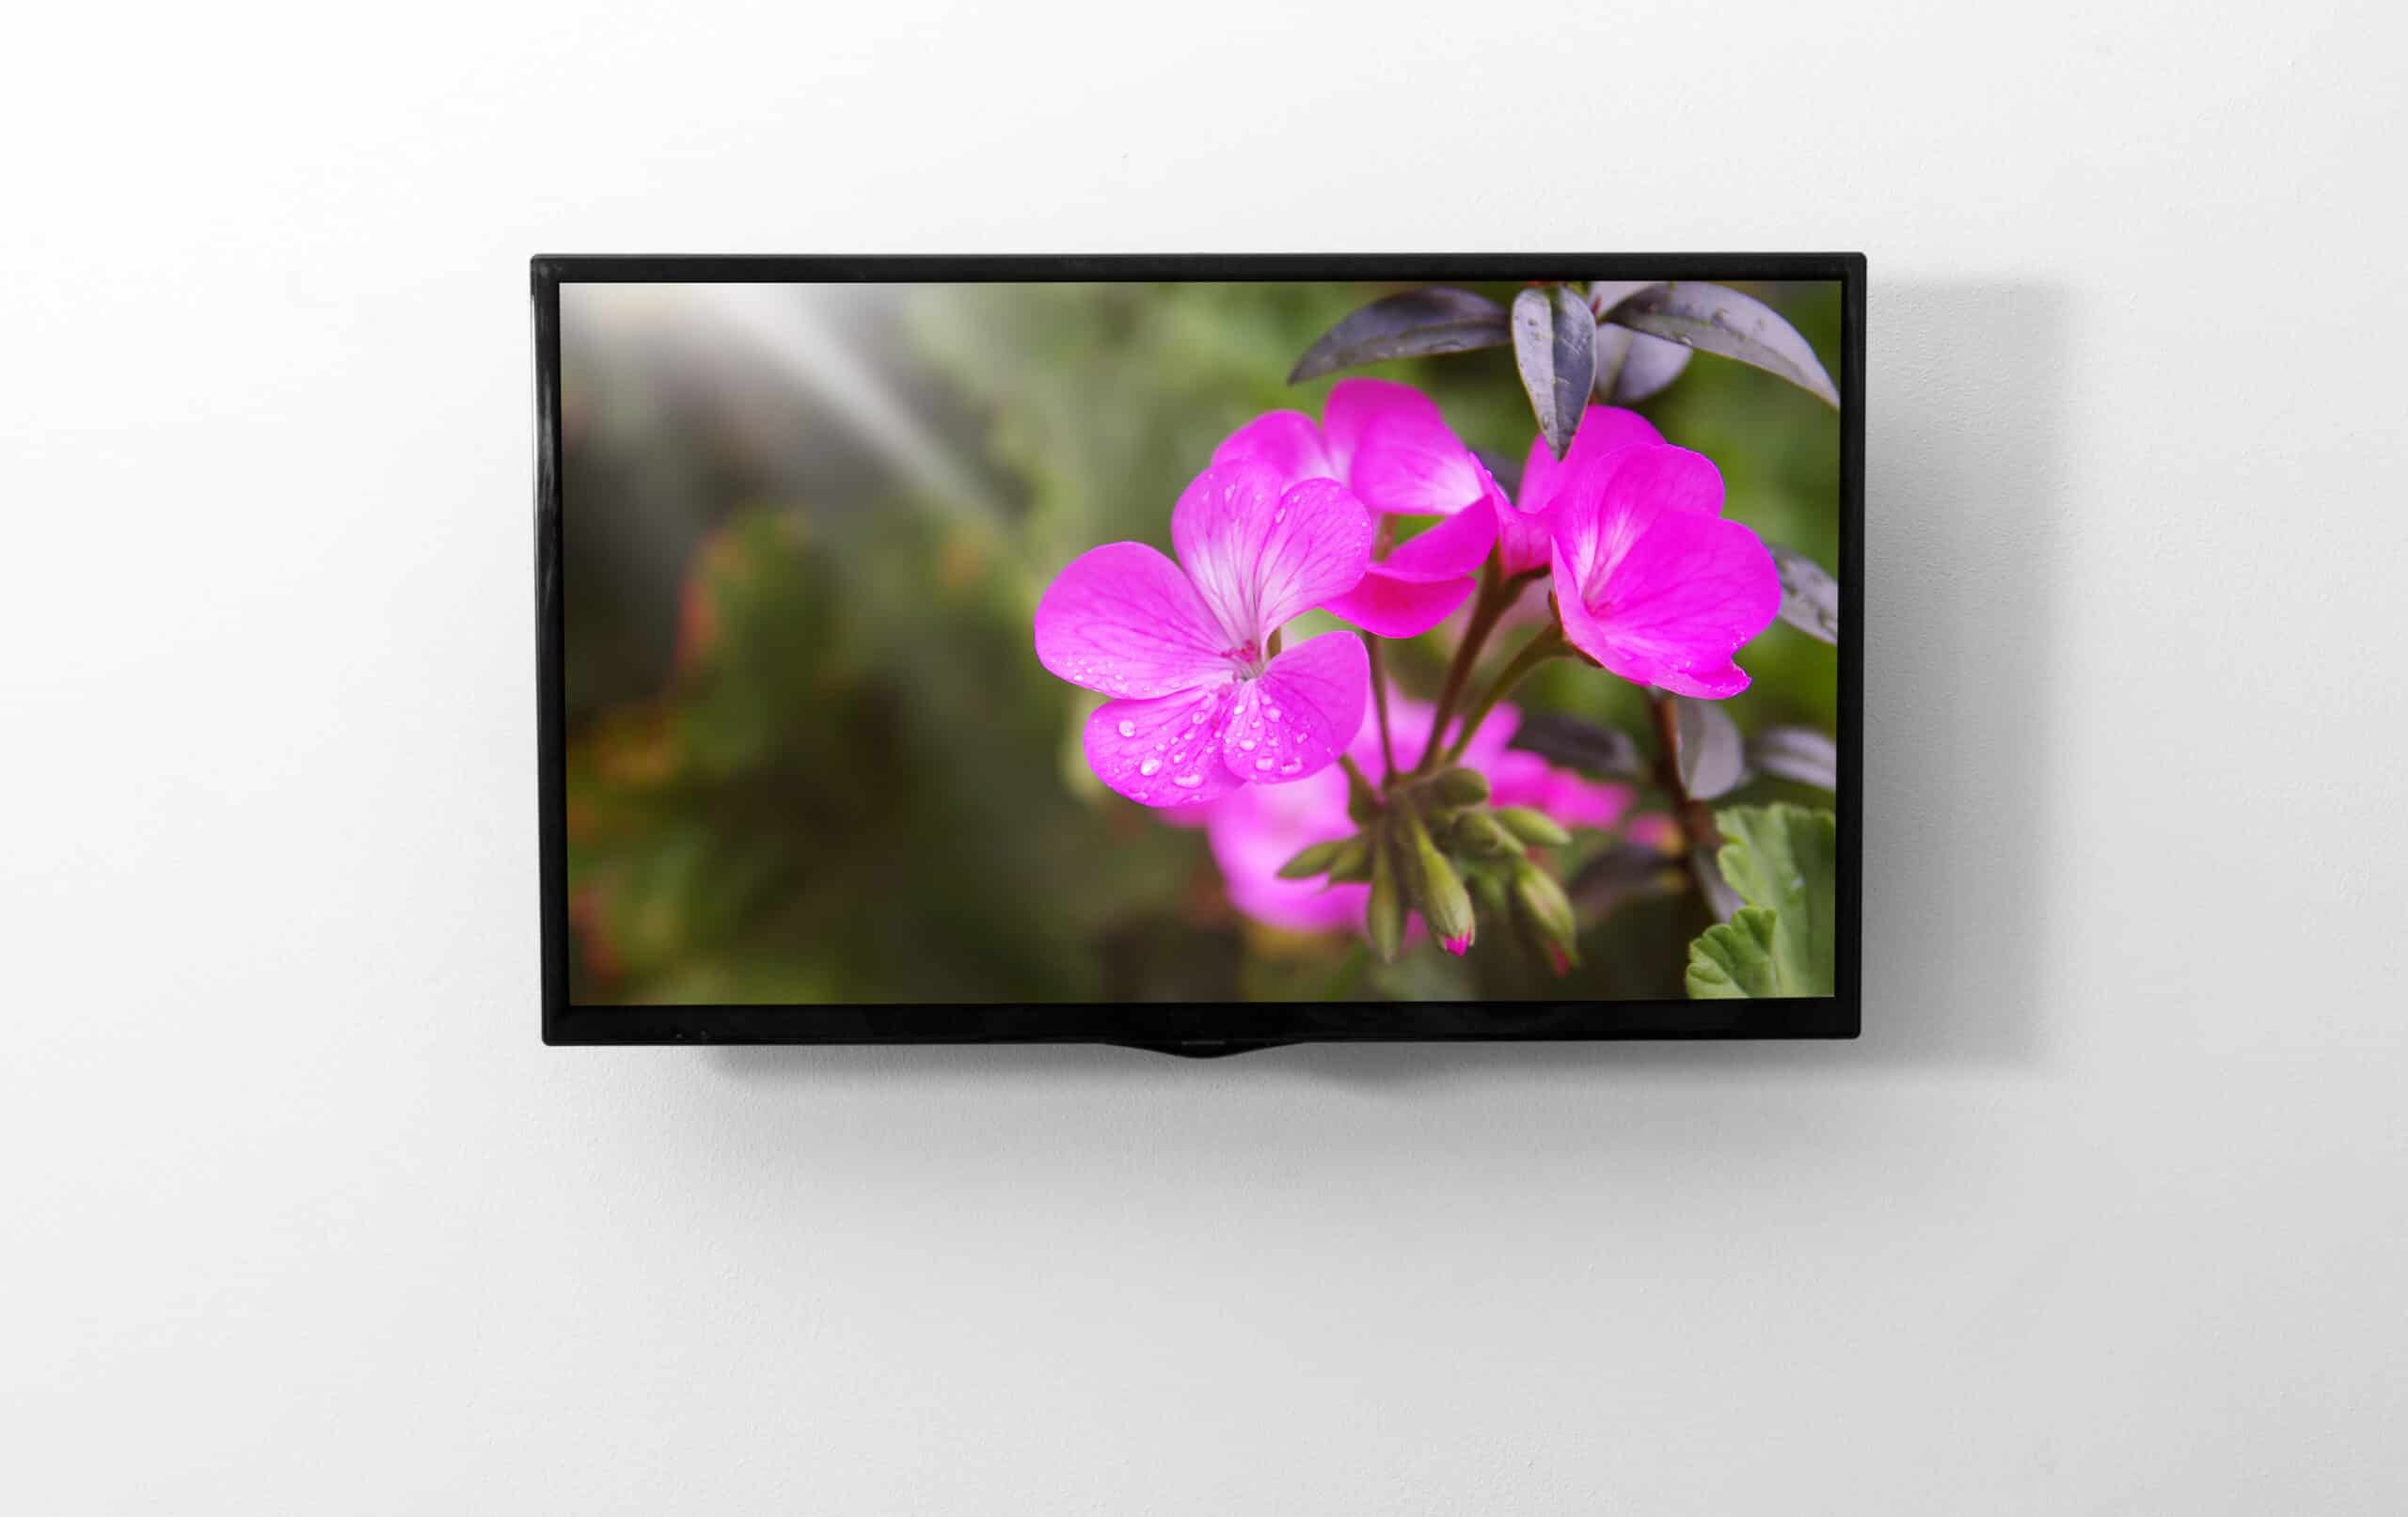 www.appr.com : smart TV 40 inch works with alexa